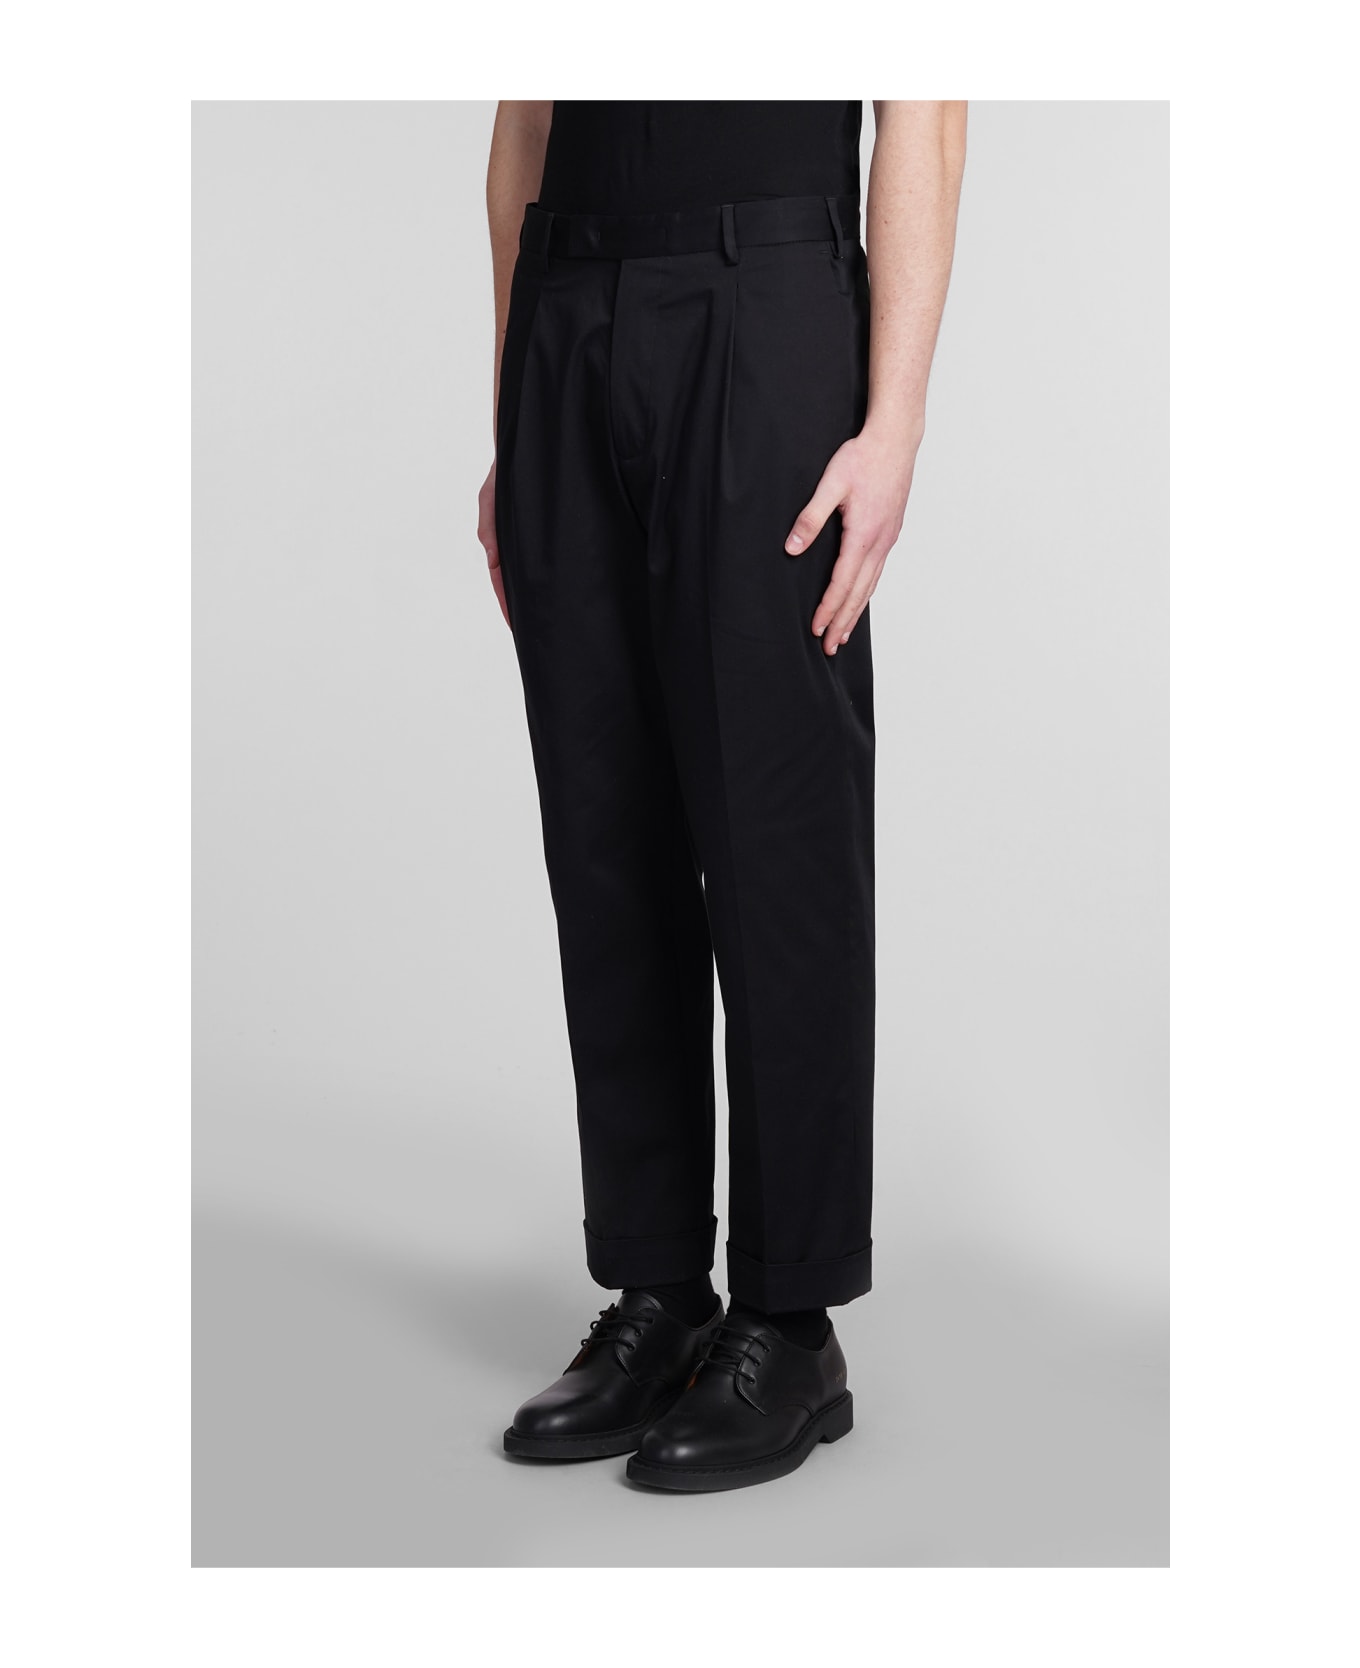 Low Brand Kim Pants In Black Cotton - black